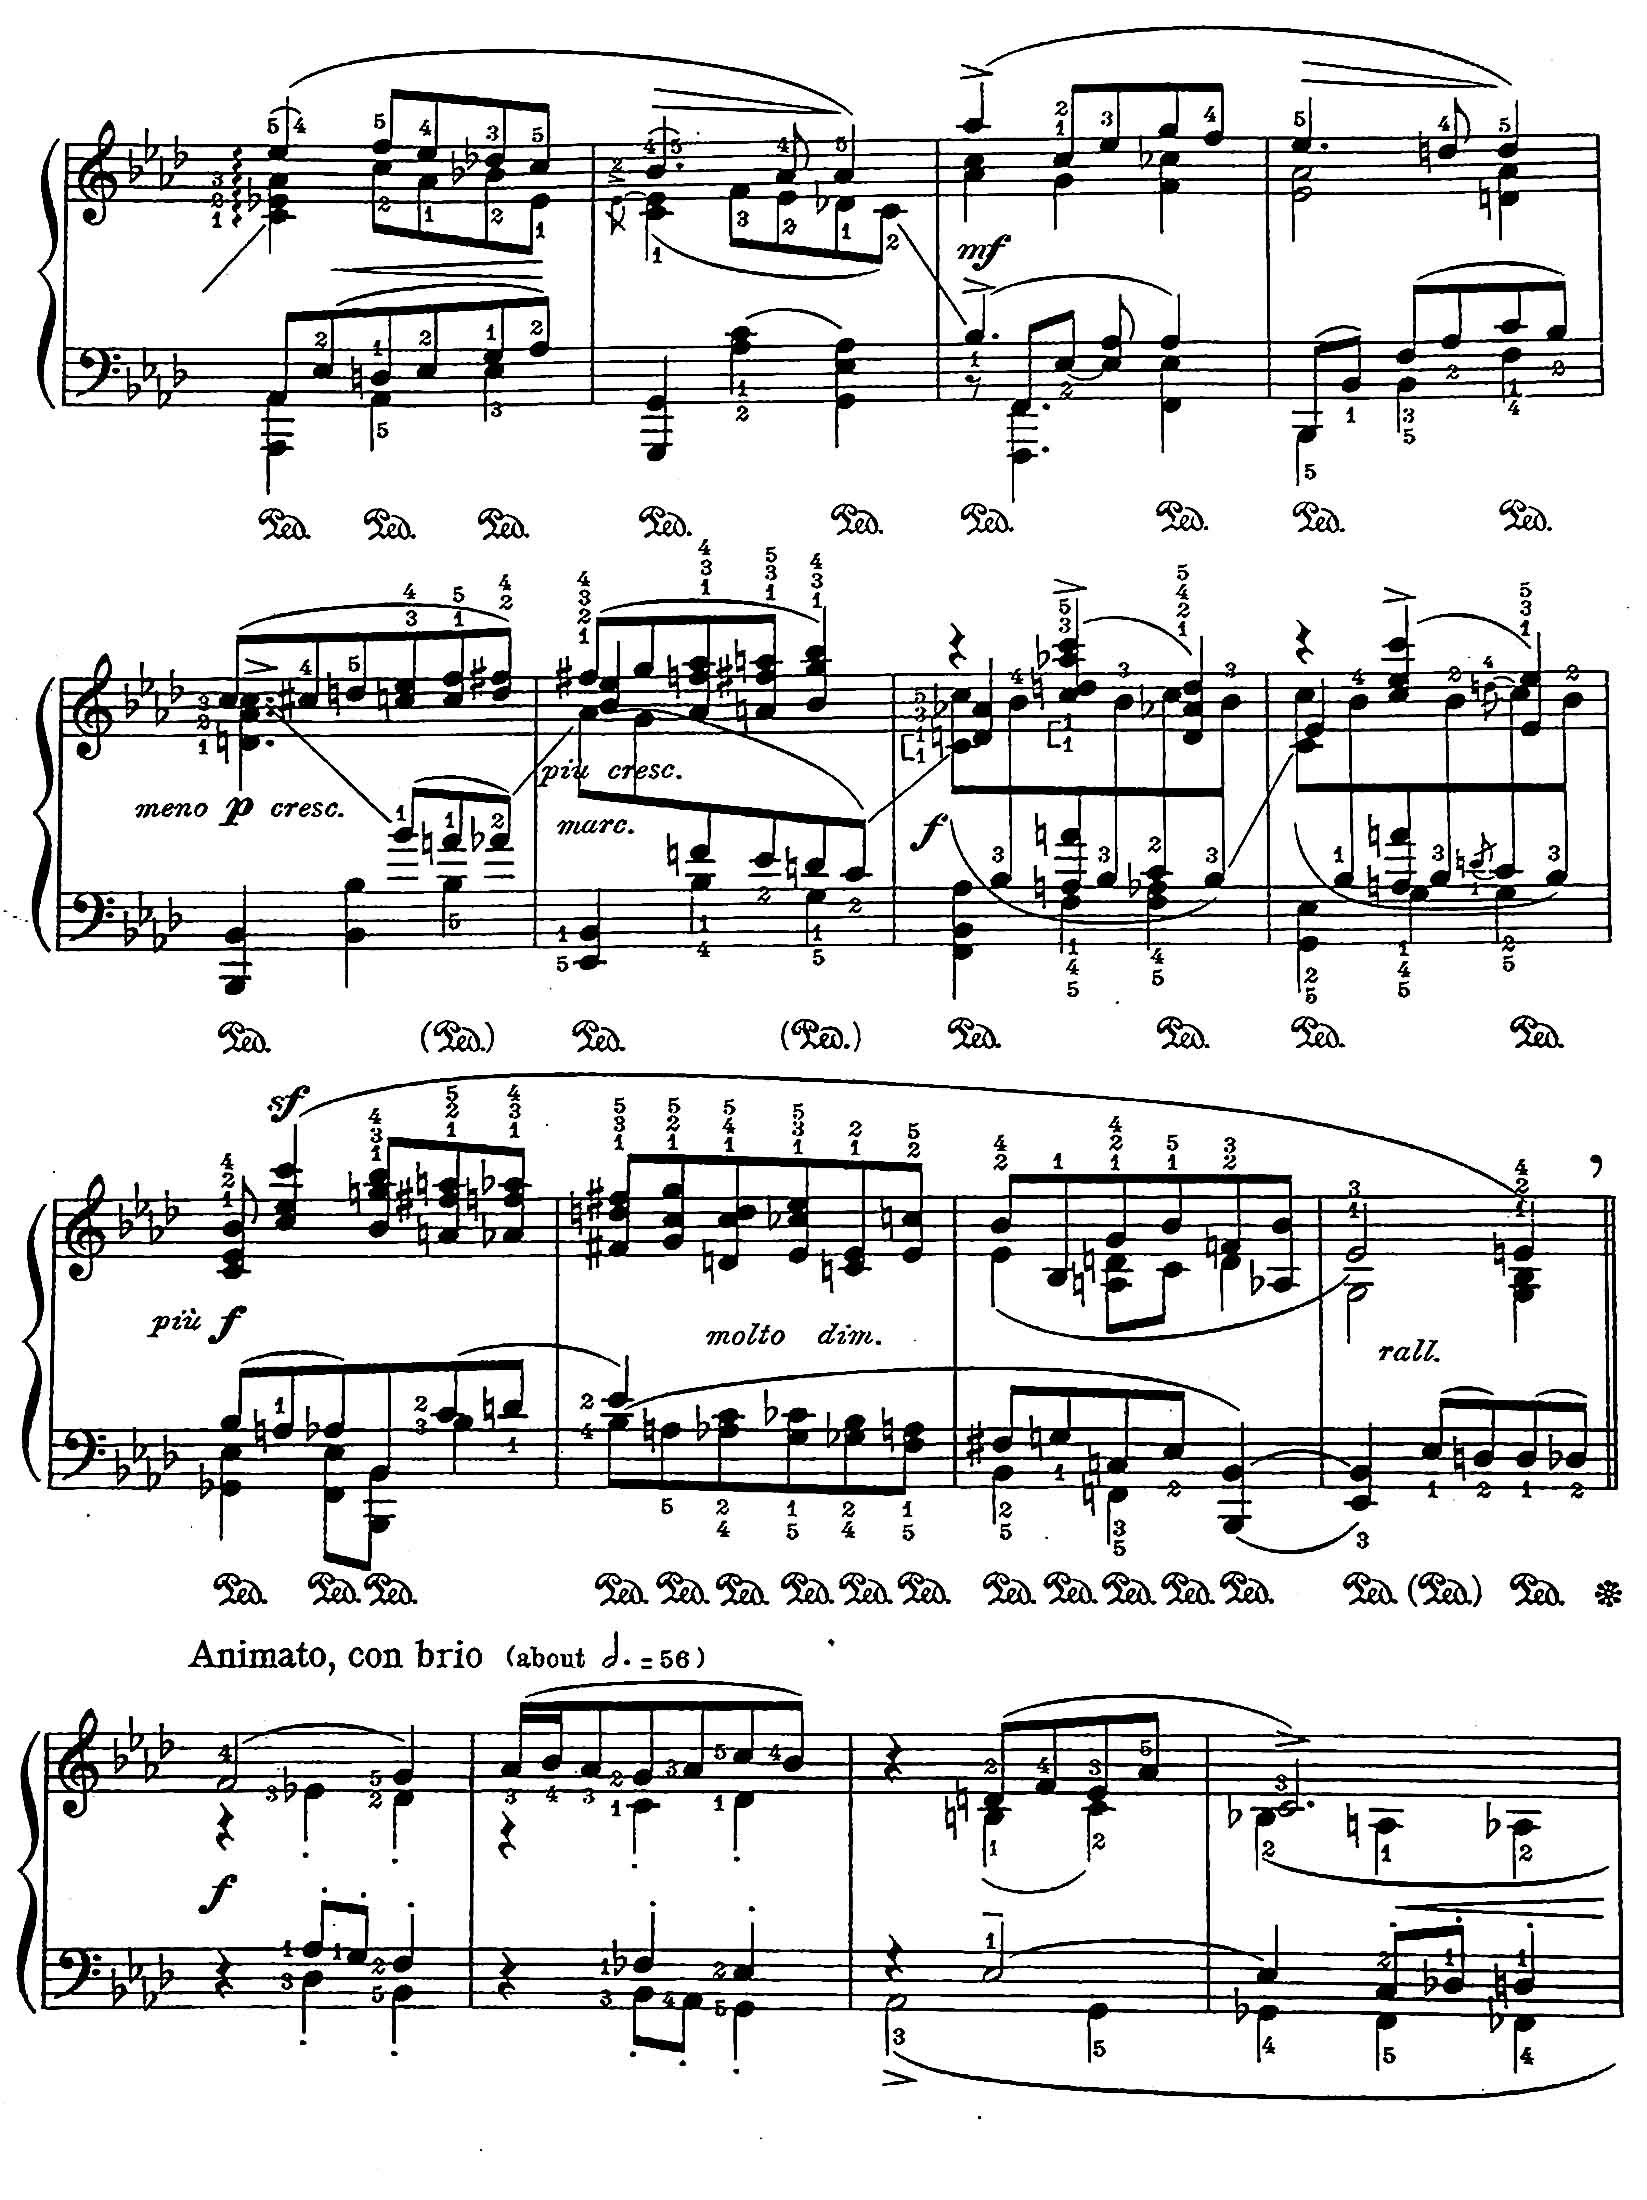 Chopin: Waltz in f, op.70n.2 arr. by Leopold Godowsky